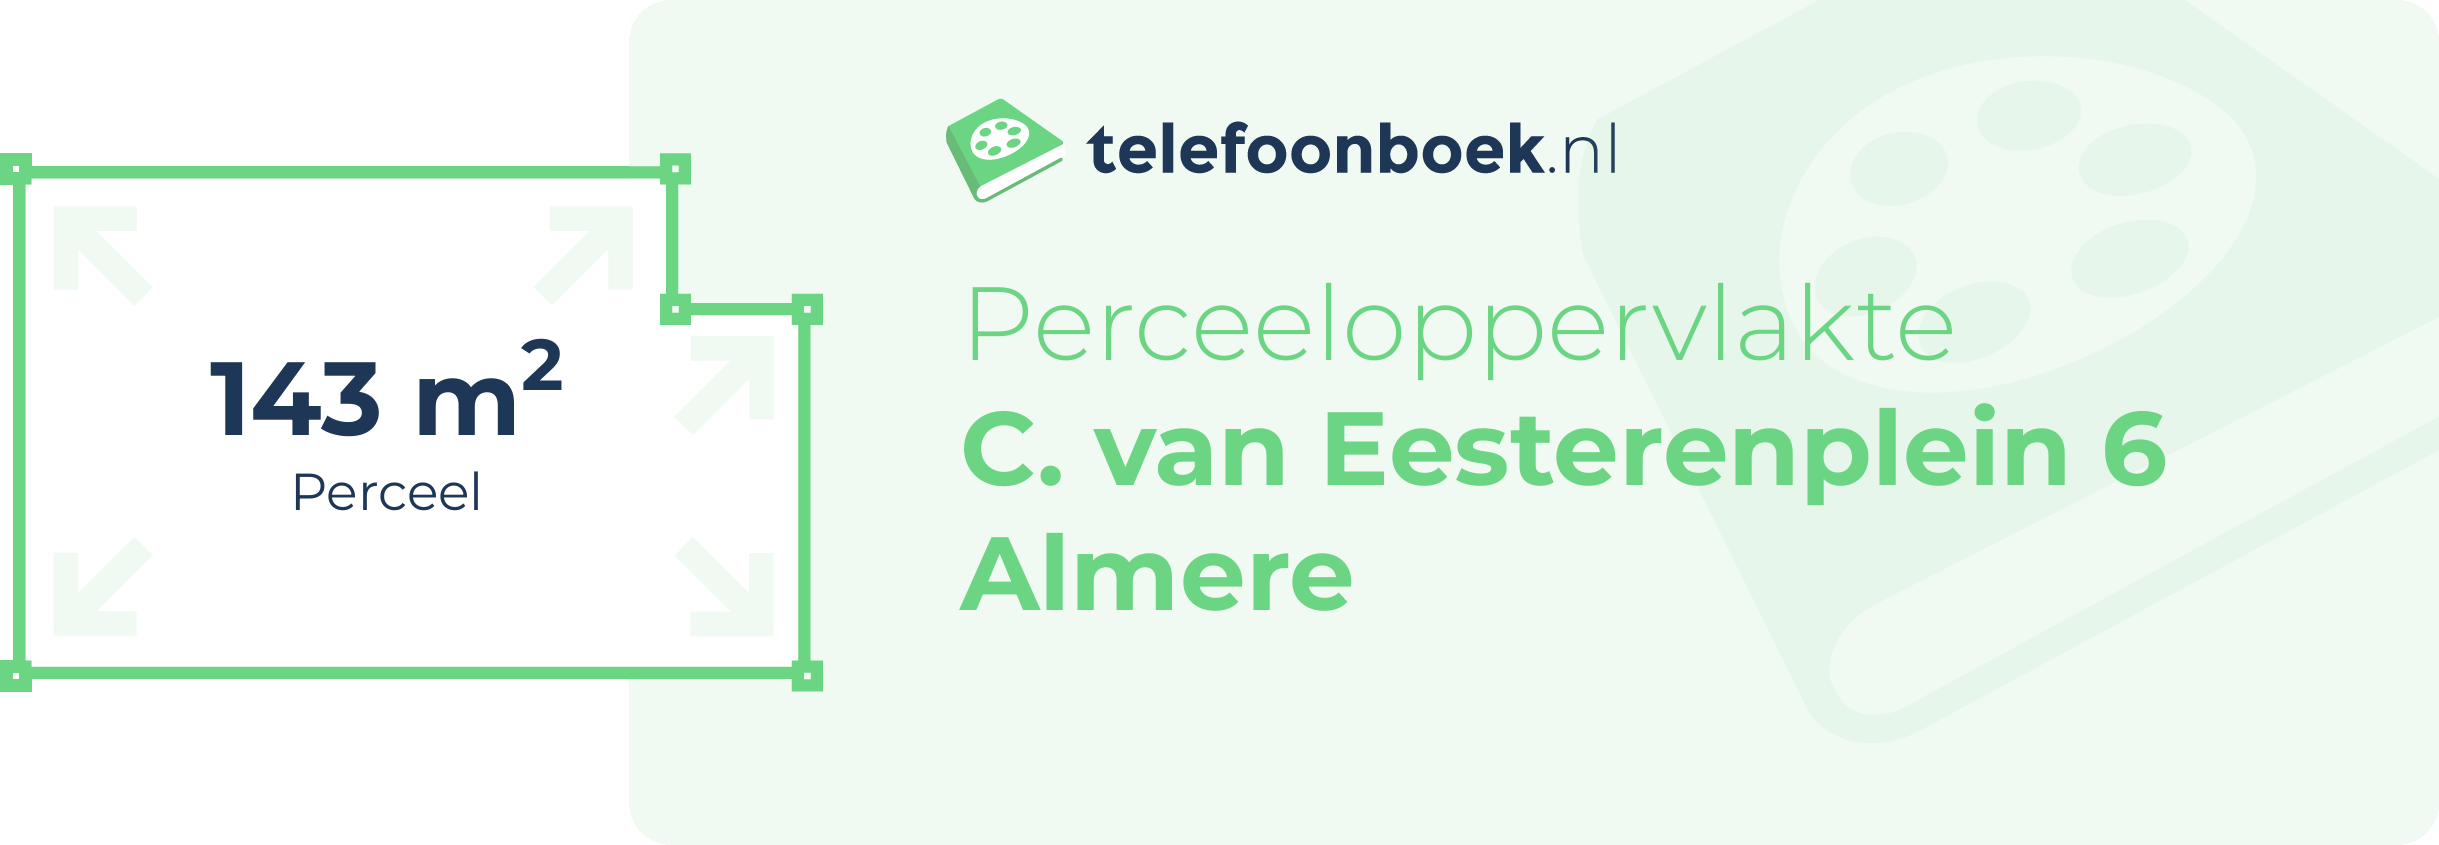 Perceeloppervlakte C. Van Eesterenplein 6 Almere